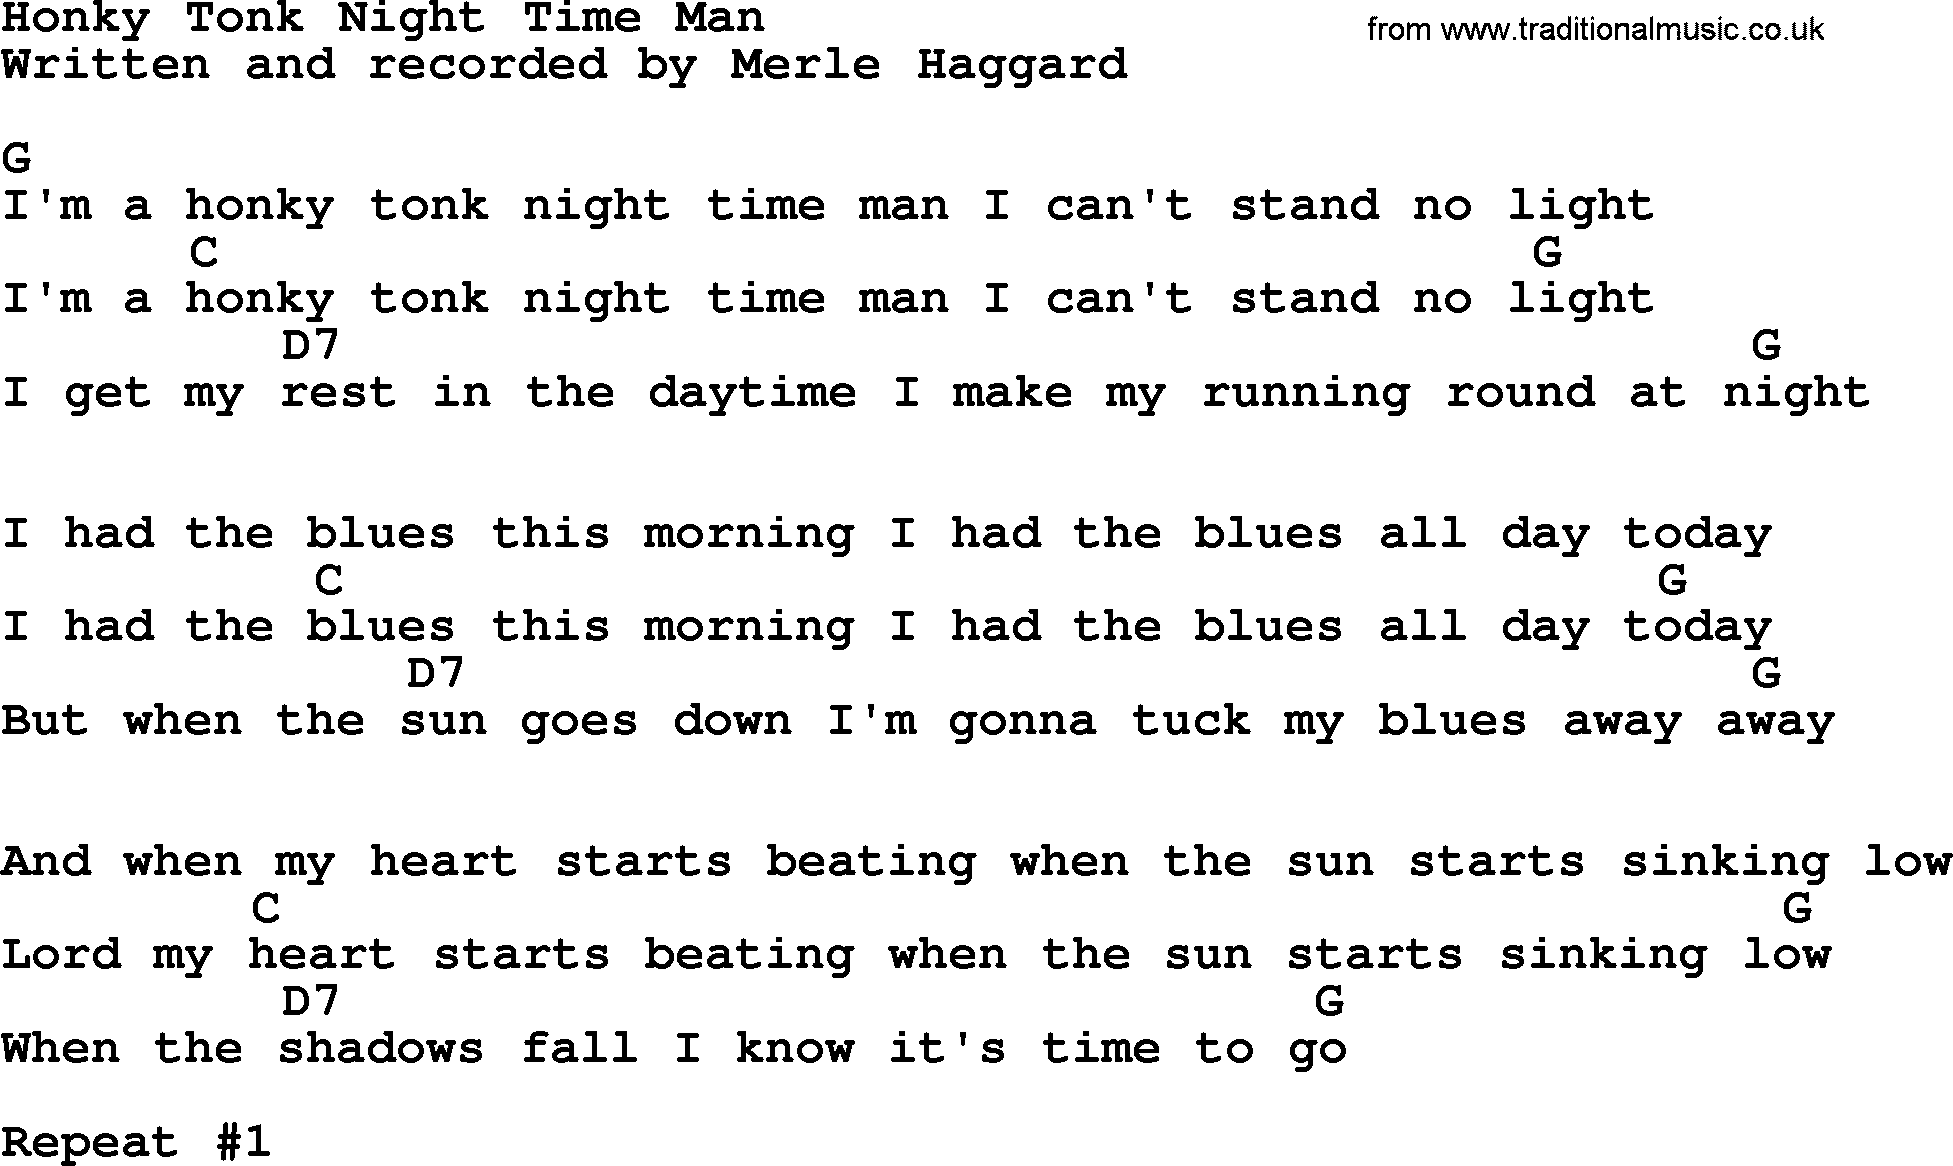 Merle Haggard song: Honky Tonk Night Time Man, lyrics and chords